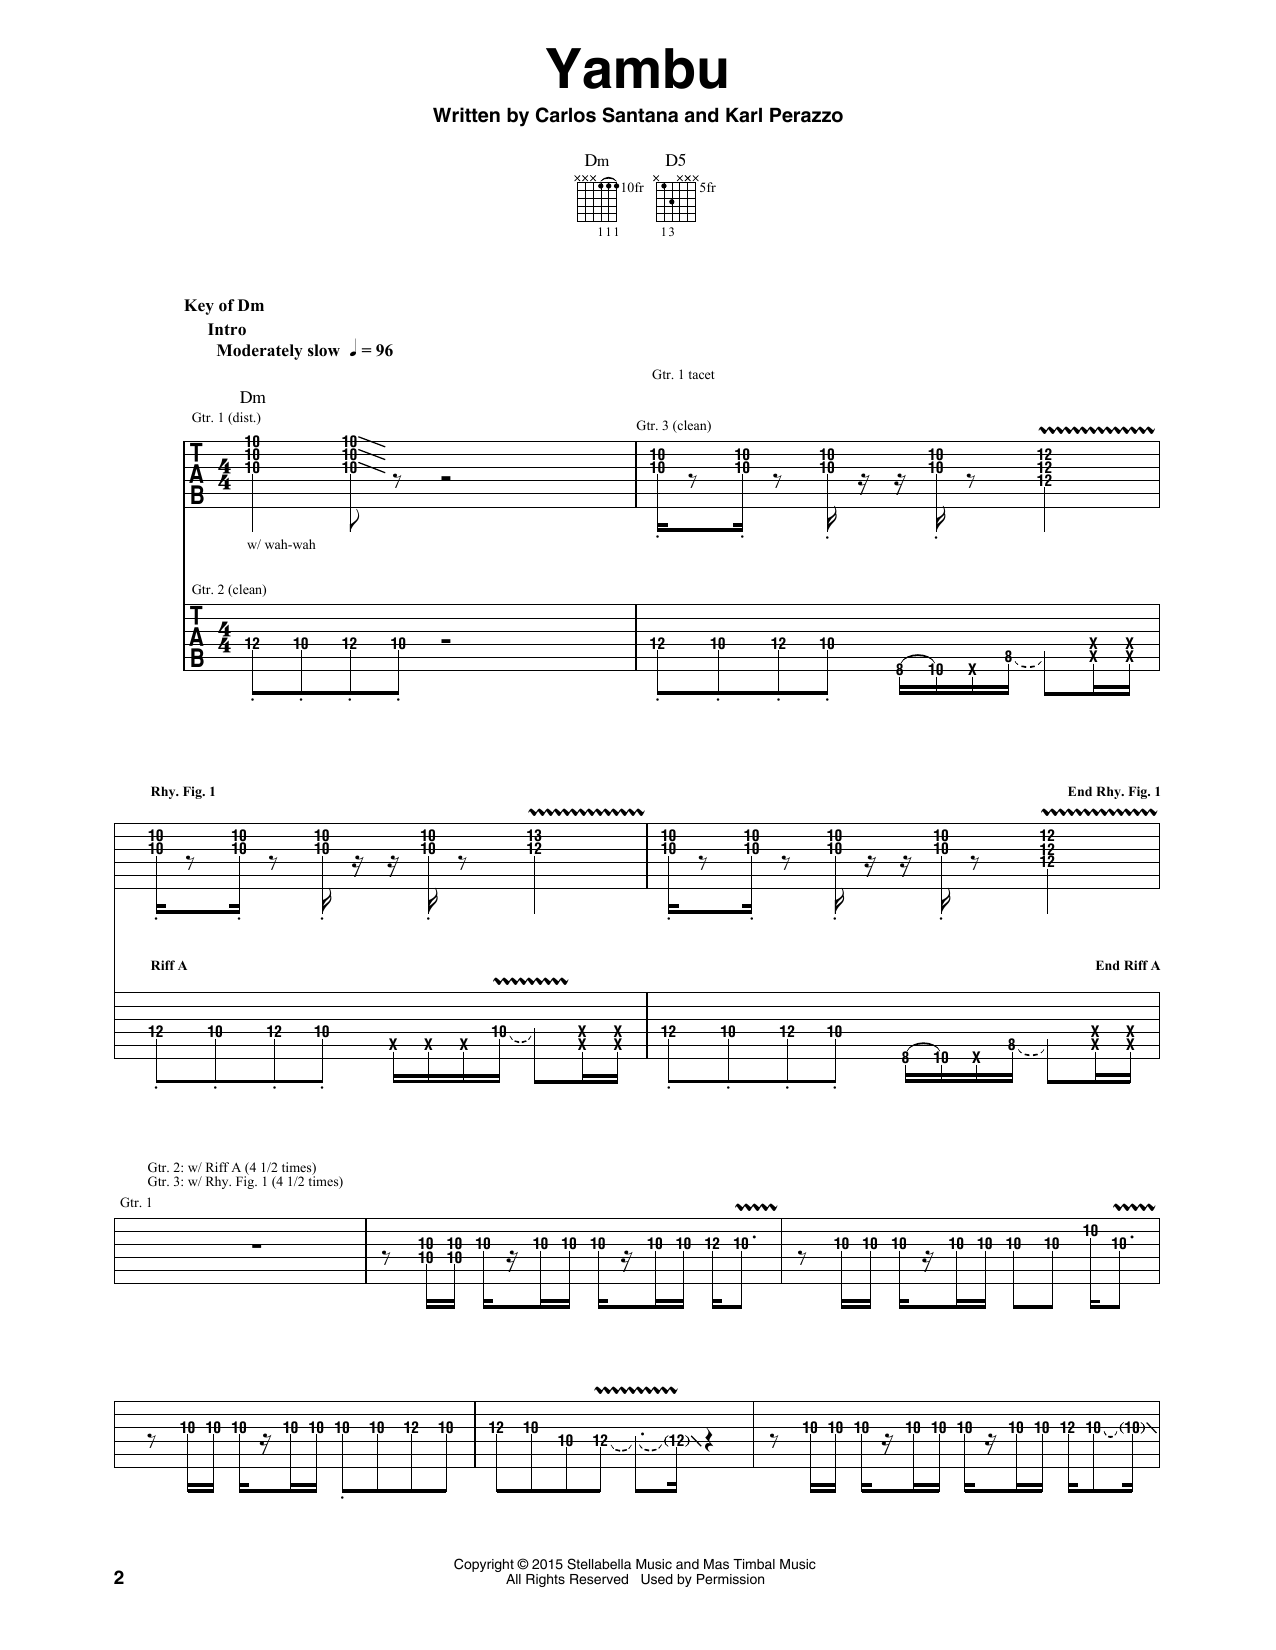 Santana Yambu Sheet Music Notes & Chords for Guitar Tab - Download or Print PDF